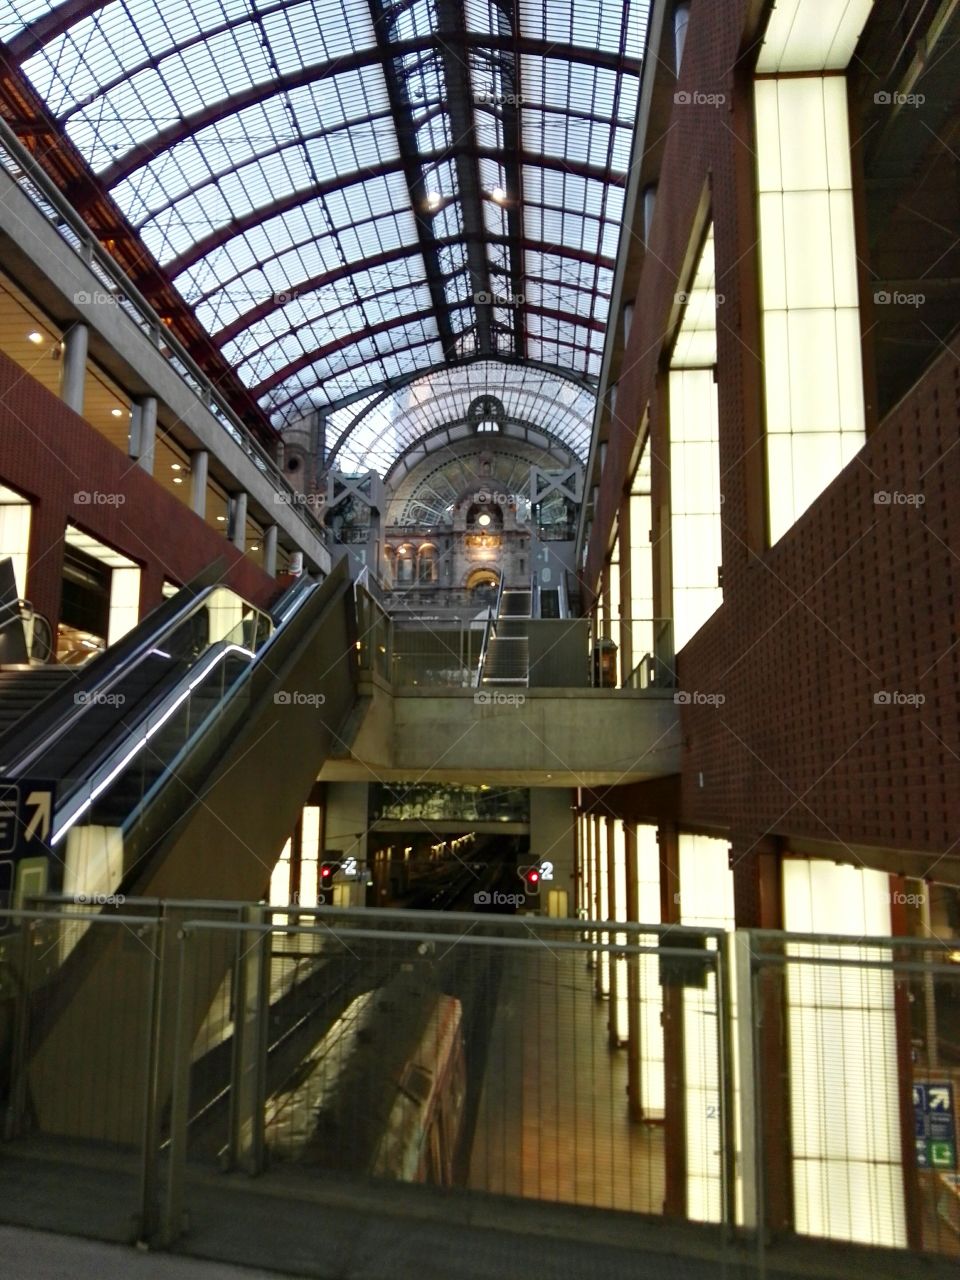 Centre Bruxelles train station. Belgium.